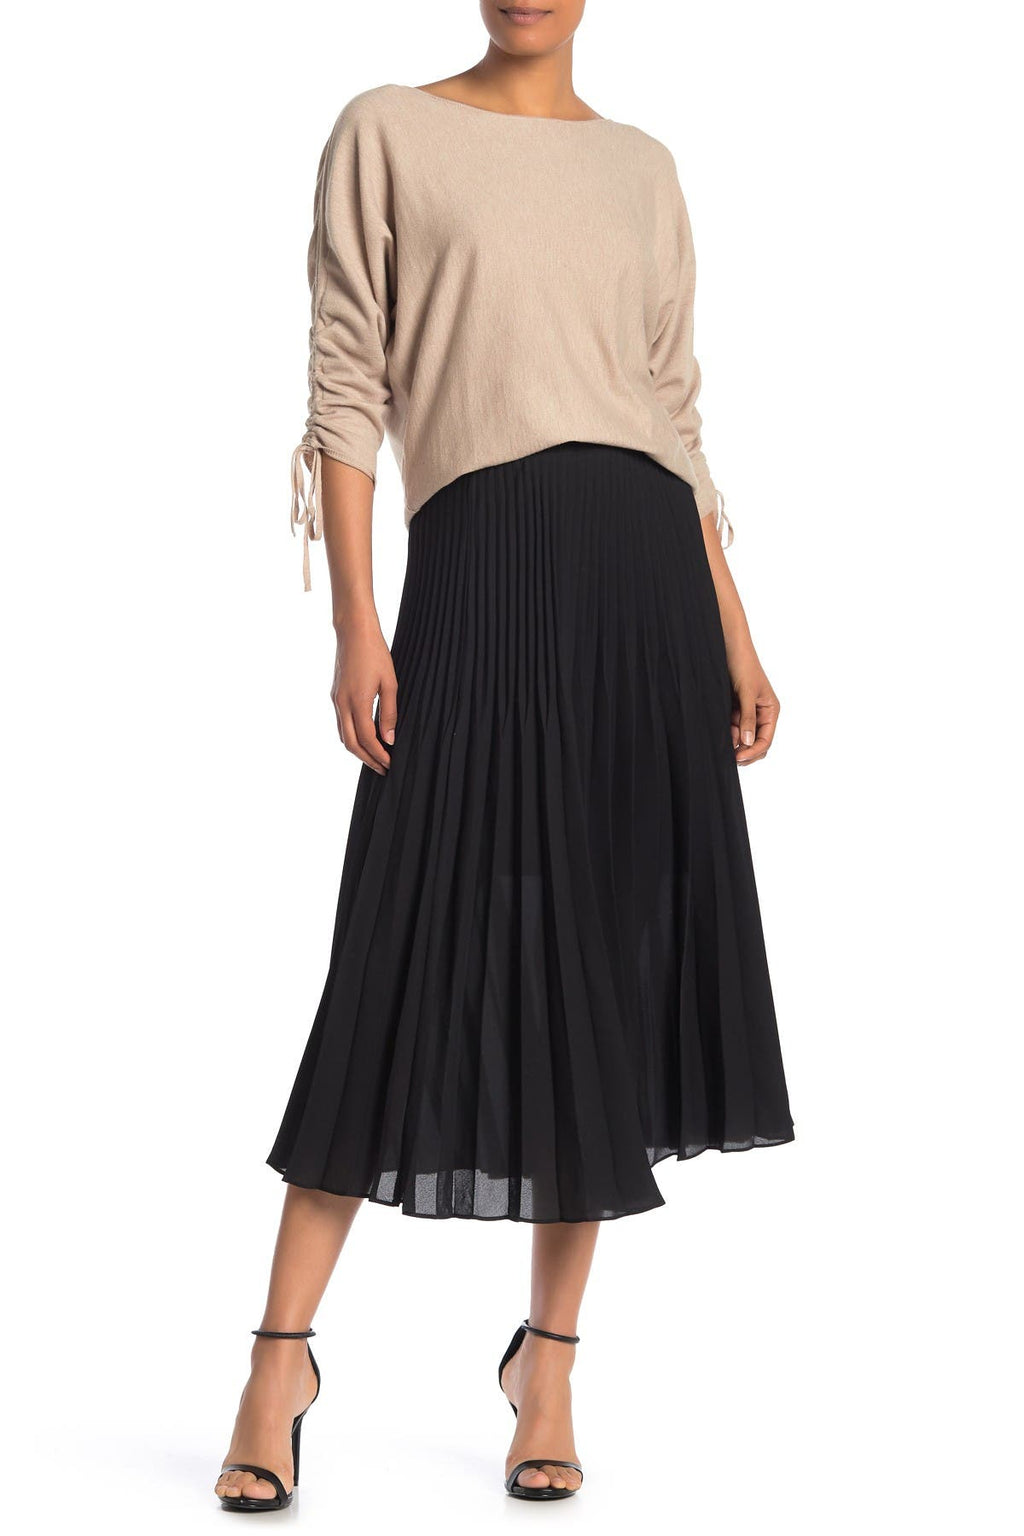 MAX STUDIO Pleated Midi Skirt, Main, color, BLACK